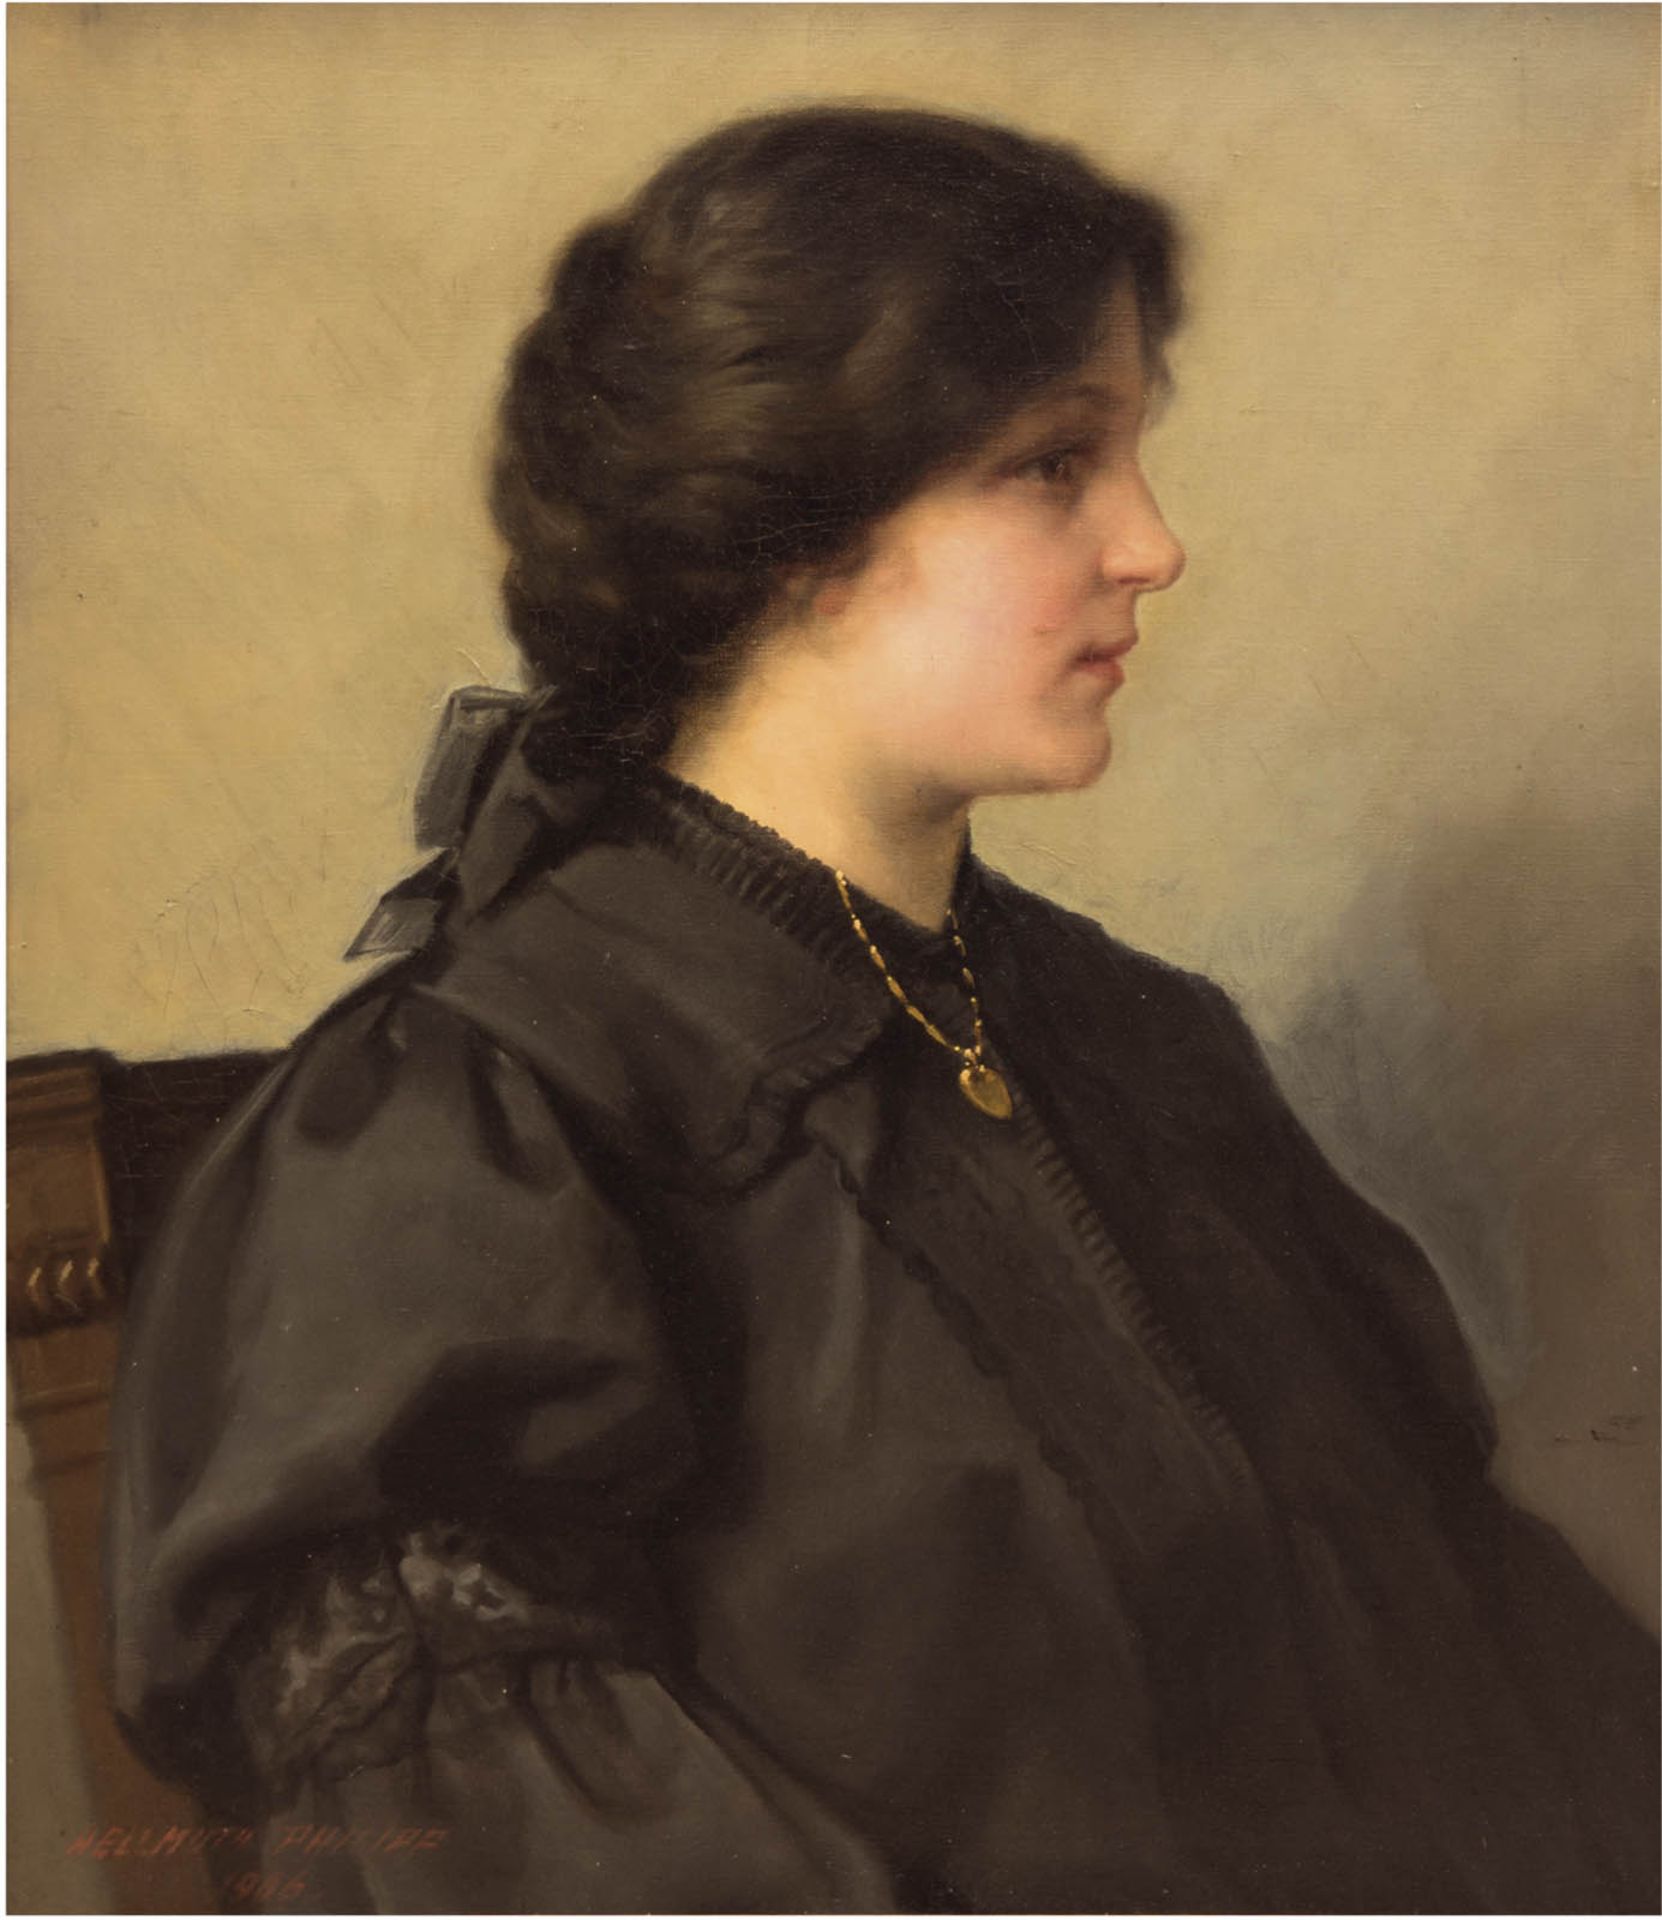 Philipp, Helmuth (1857 Berlin-?) "Porträt einer jungen Frau", Öl/Lw., sign. u.l. und dat. 1